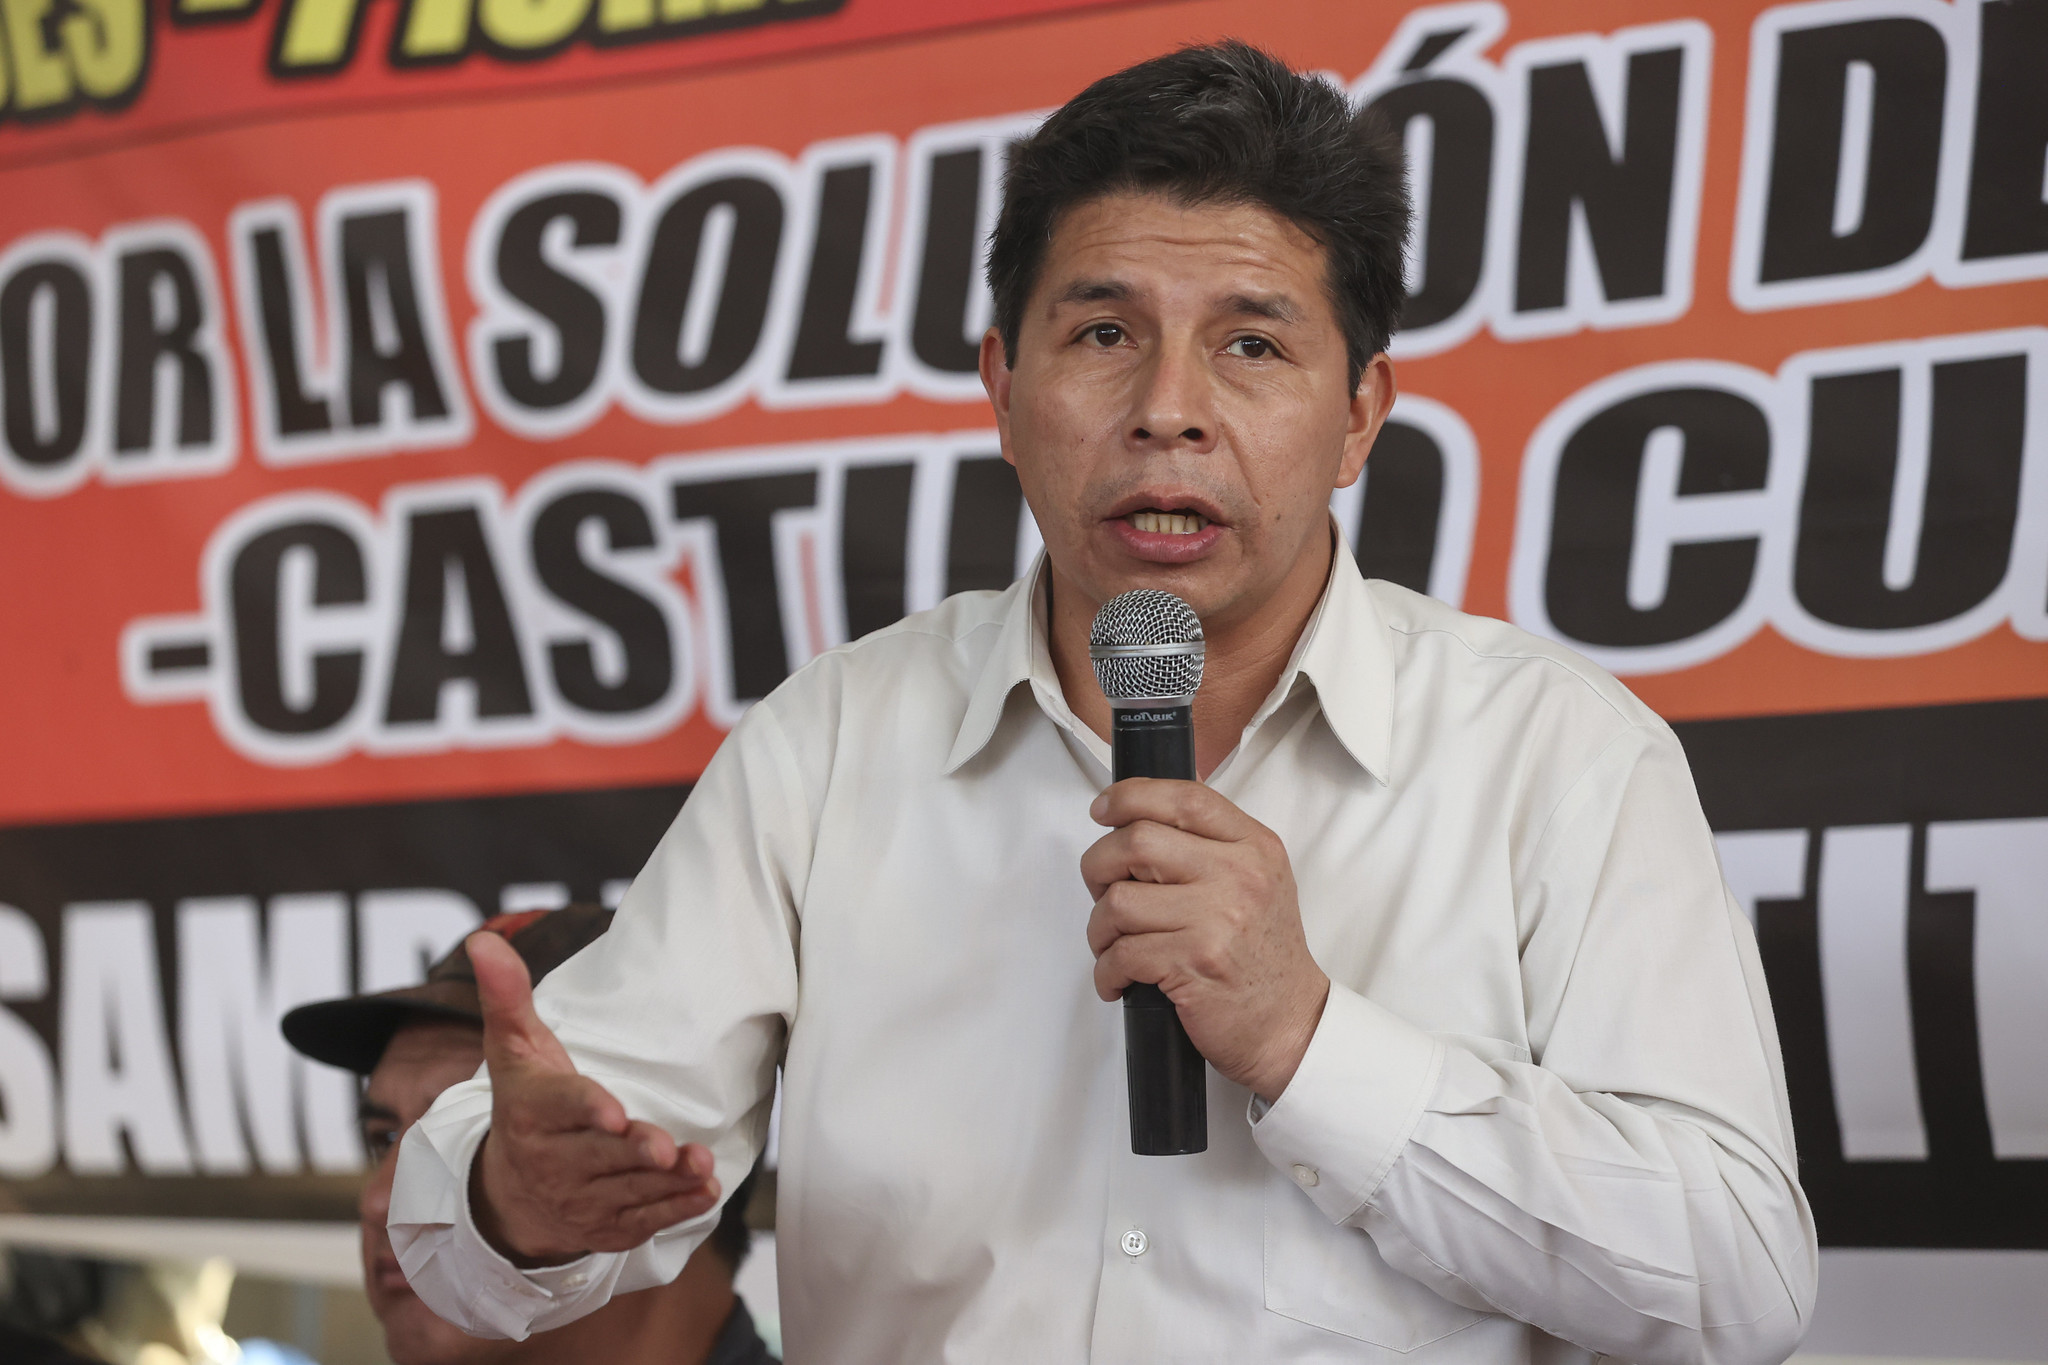 Pedro Castillo rechazó enérgicamente retención de periodistas en Cajamarca y exigió se investigue caso